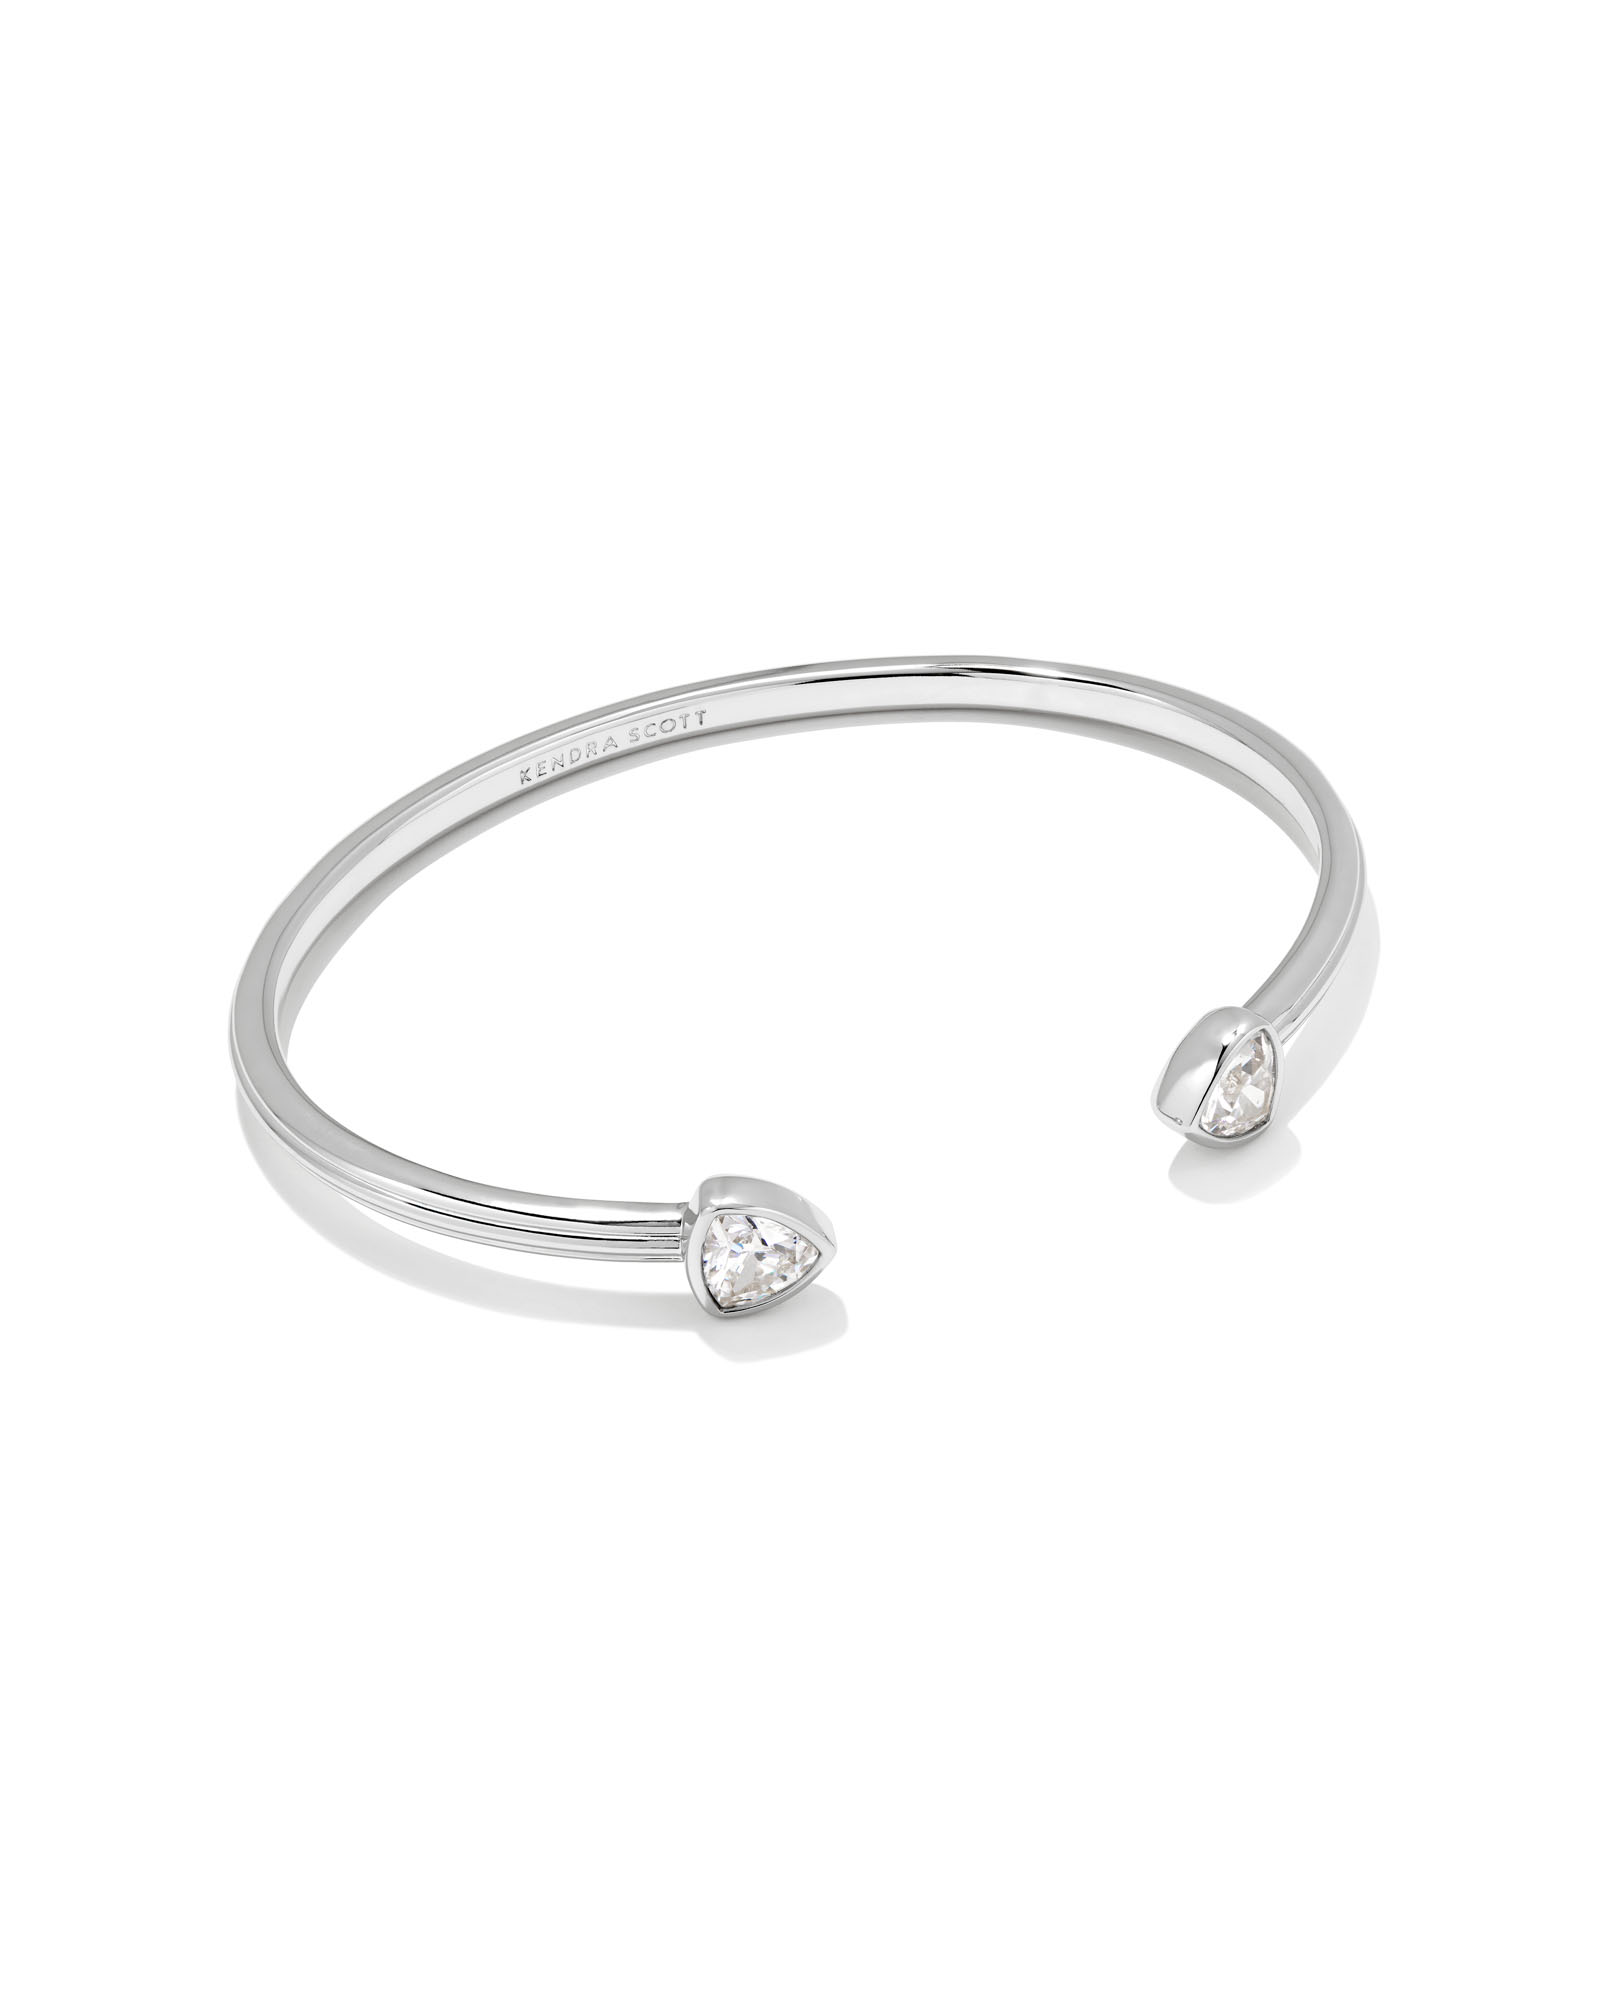 Arden Silver Cuff Bracelet in White Crystal | Kendra Scott